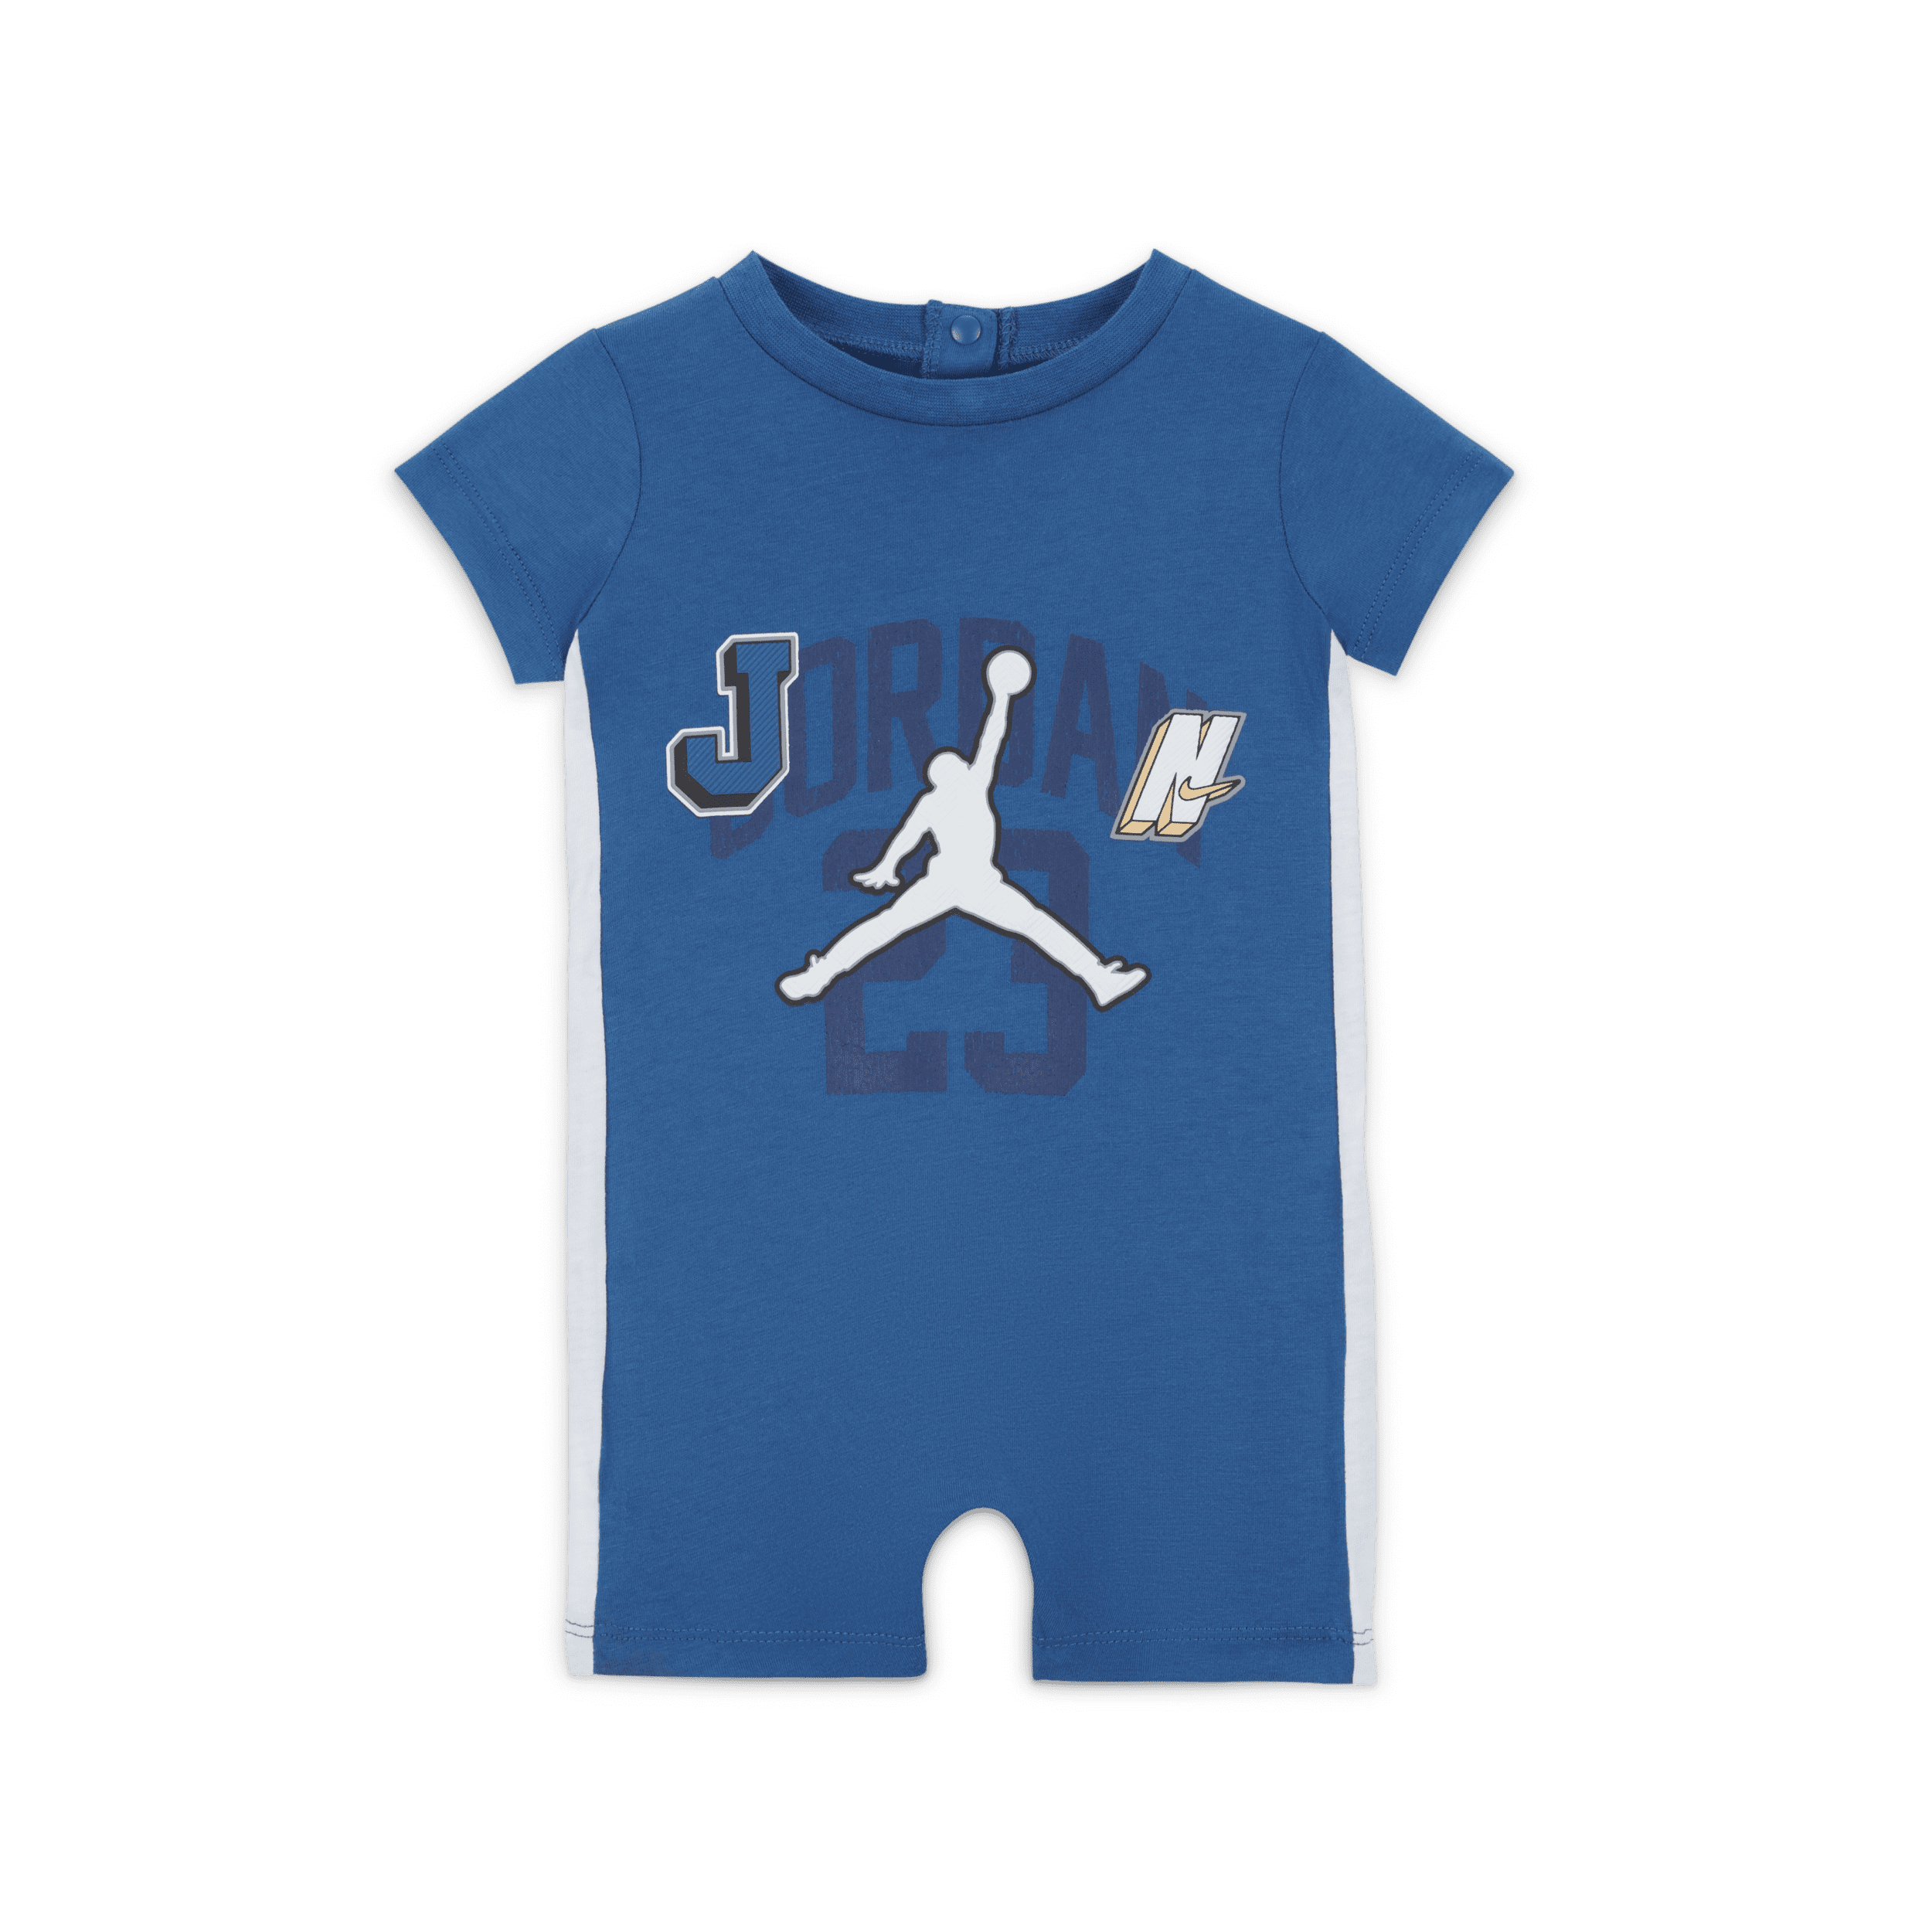 Jordan Gym 23 Knit Rompertje voor baby’s (3-6 maanden) - Blauw